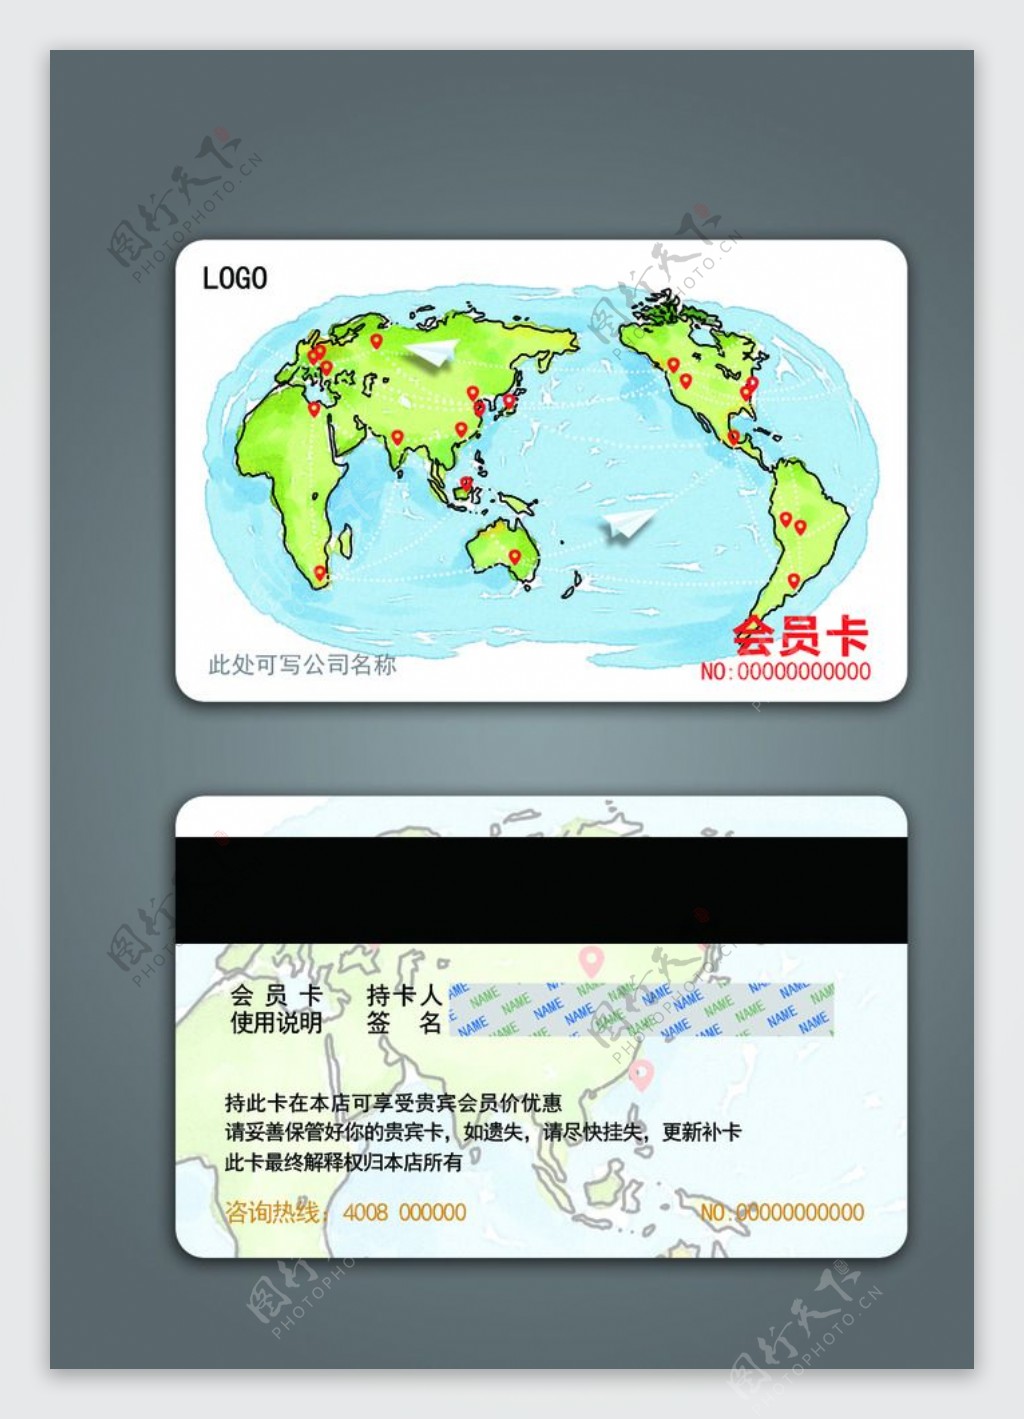 旅游公司会员卡平面设计